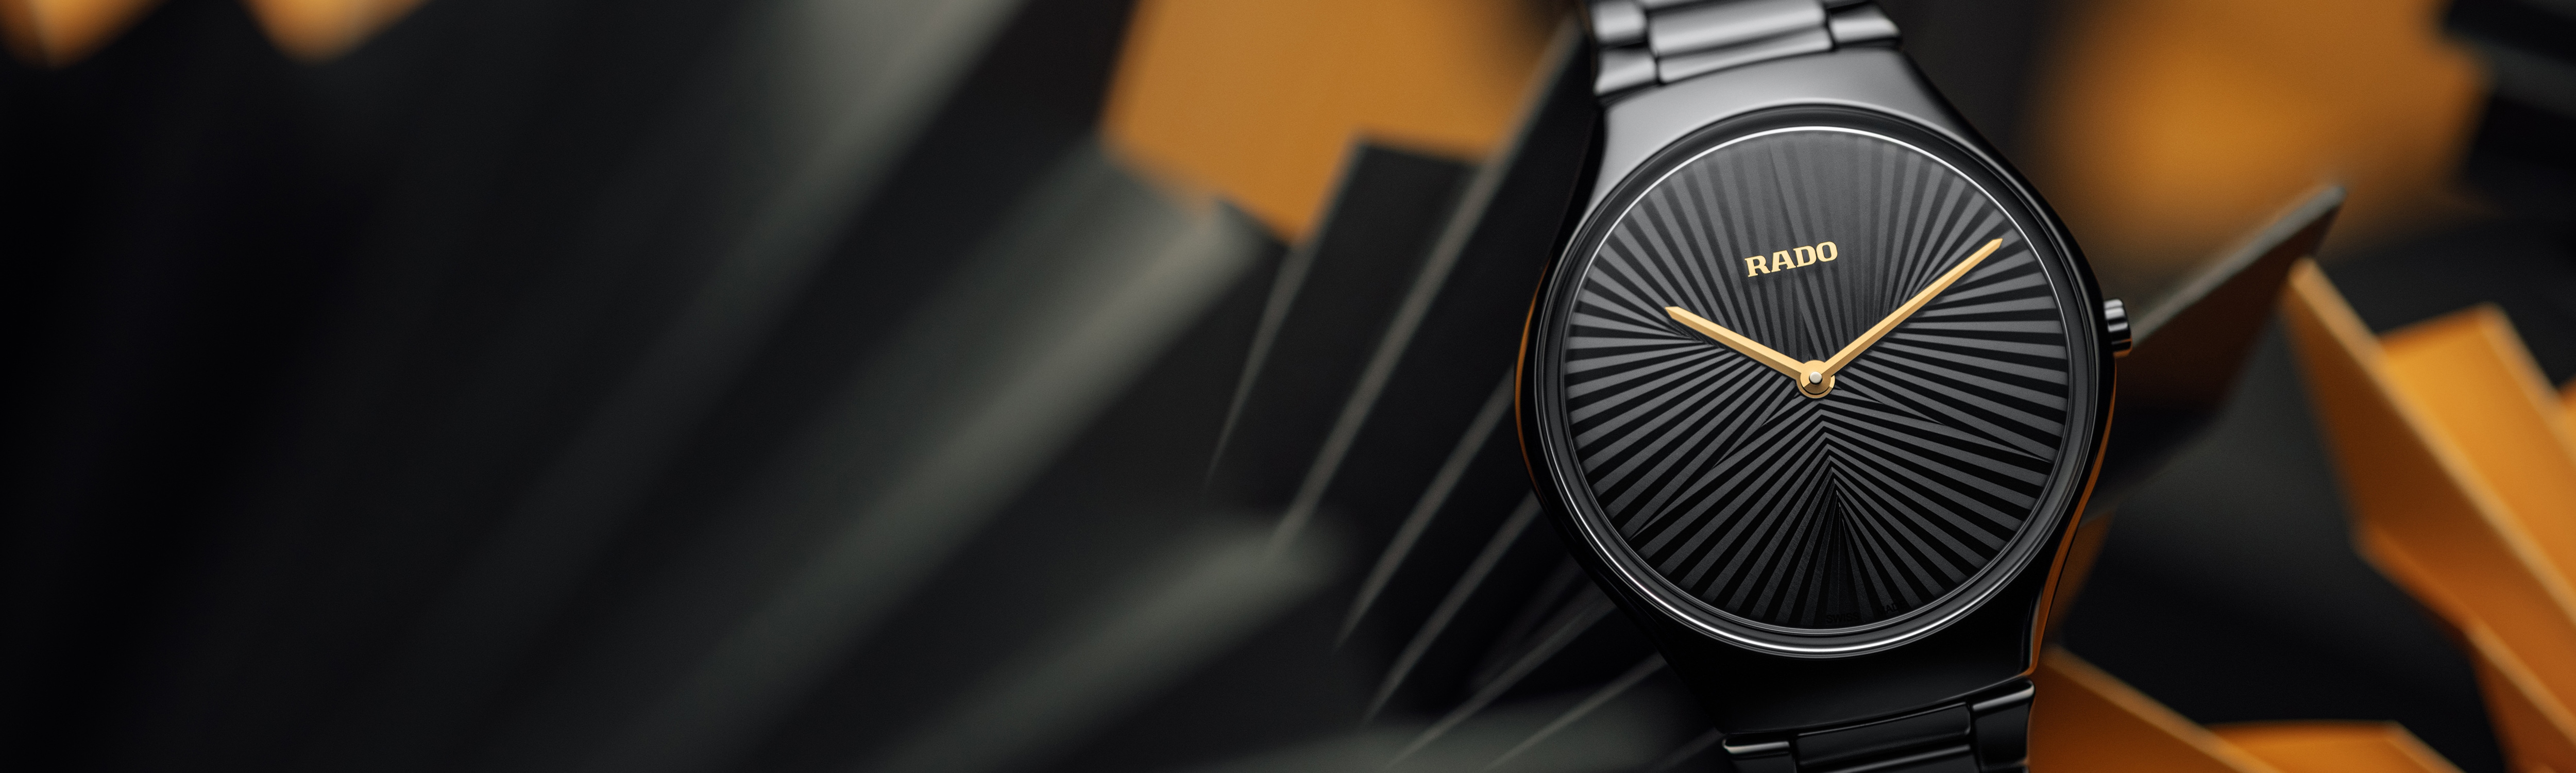 セラミック製のTrueThinline超薄型時計|ラドー®ジャパン